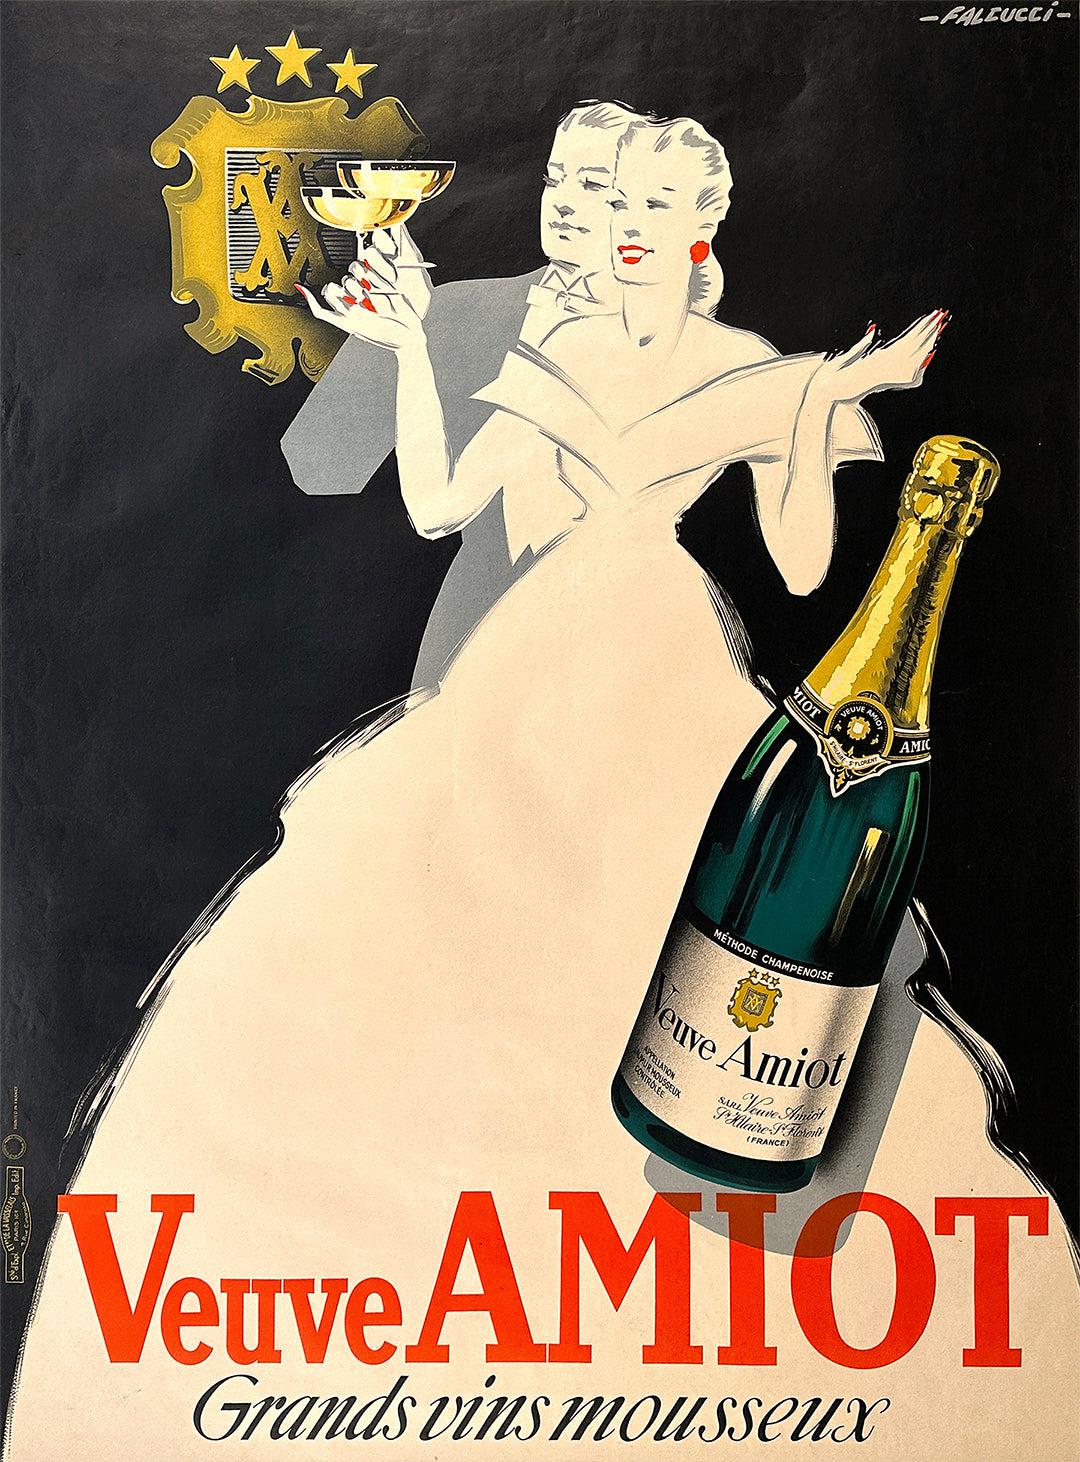 Original Vintage Veuve Amiot Champagne Poster by Falcucci c1935 Couple